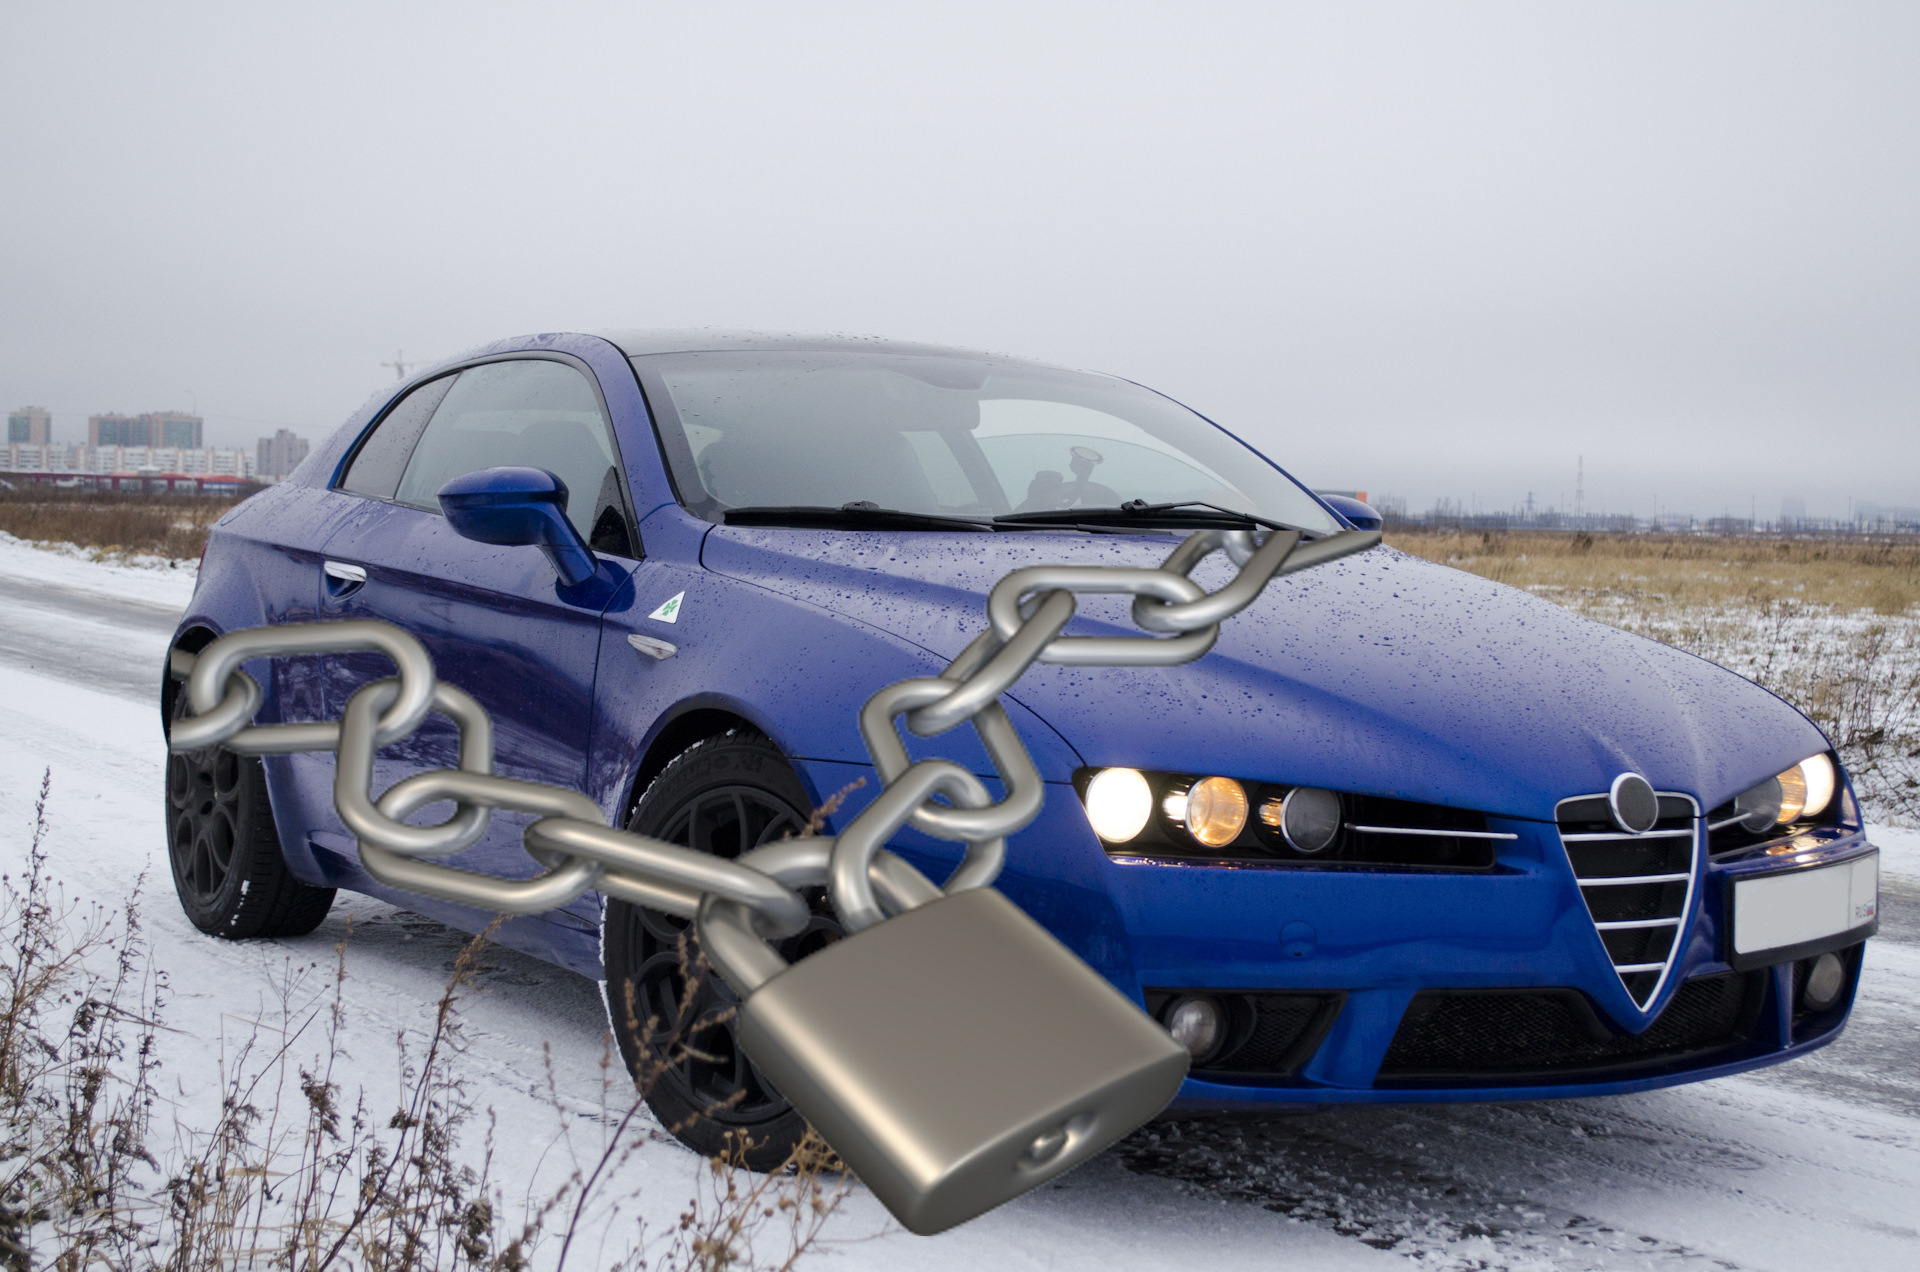 Mënyrat për të mbrojtur një makinë nga vjedhja - metodat më të zakonshme dhe efektive për të mbrojtur një makinë nga vjedhja